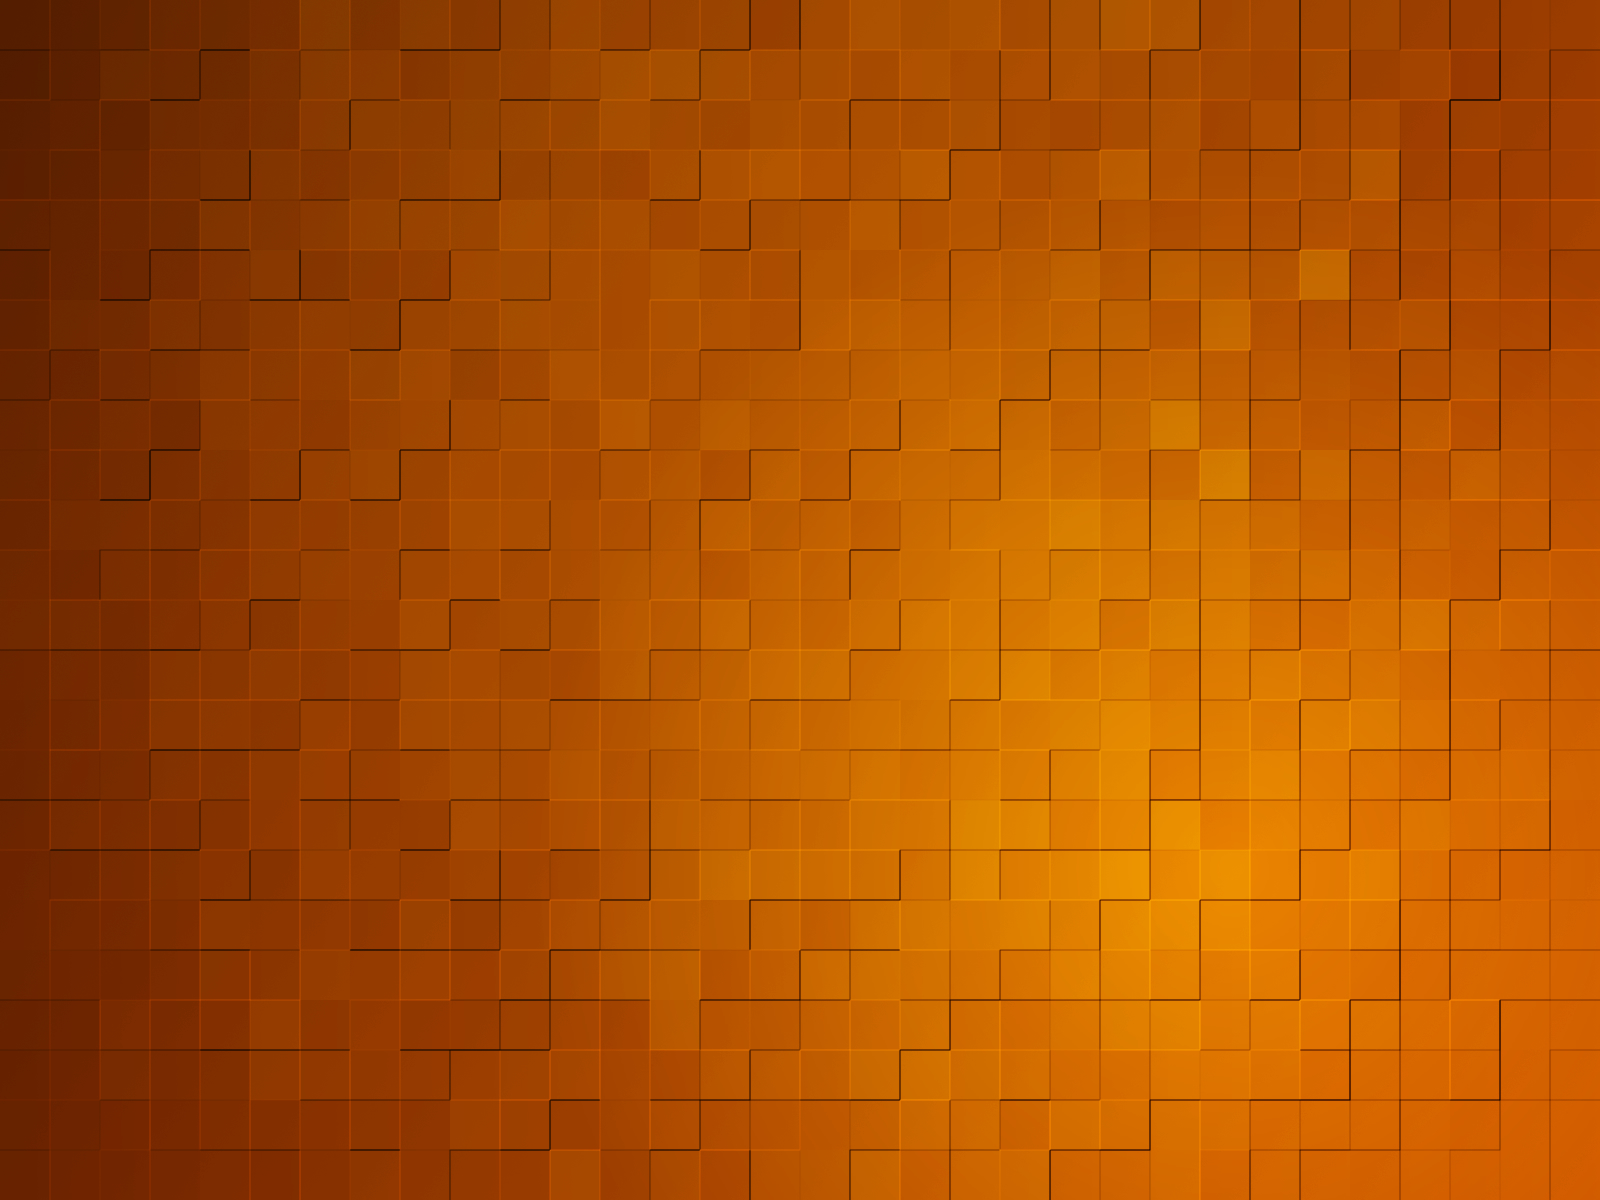 Hình nền cam và xám: Nếu bạn đam mê khám phá và chinh phục những điều mới lạ, hoặc đơn giản là muốn tận hưởng những khoảnh khắc thư giãn thì hình nền Cave sẽ đáp ứng được tất cả yêu cầu của bạn. Với màu sắc cam và xám, chắc chắn sẽ giúp bạn tập trung tối đa.